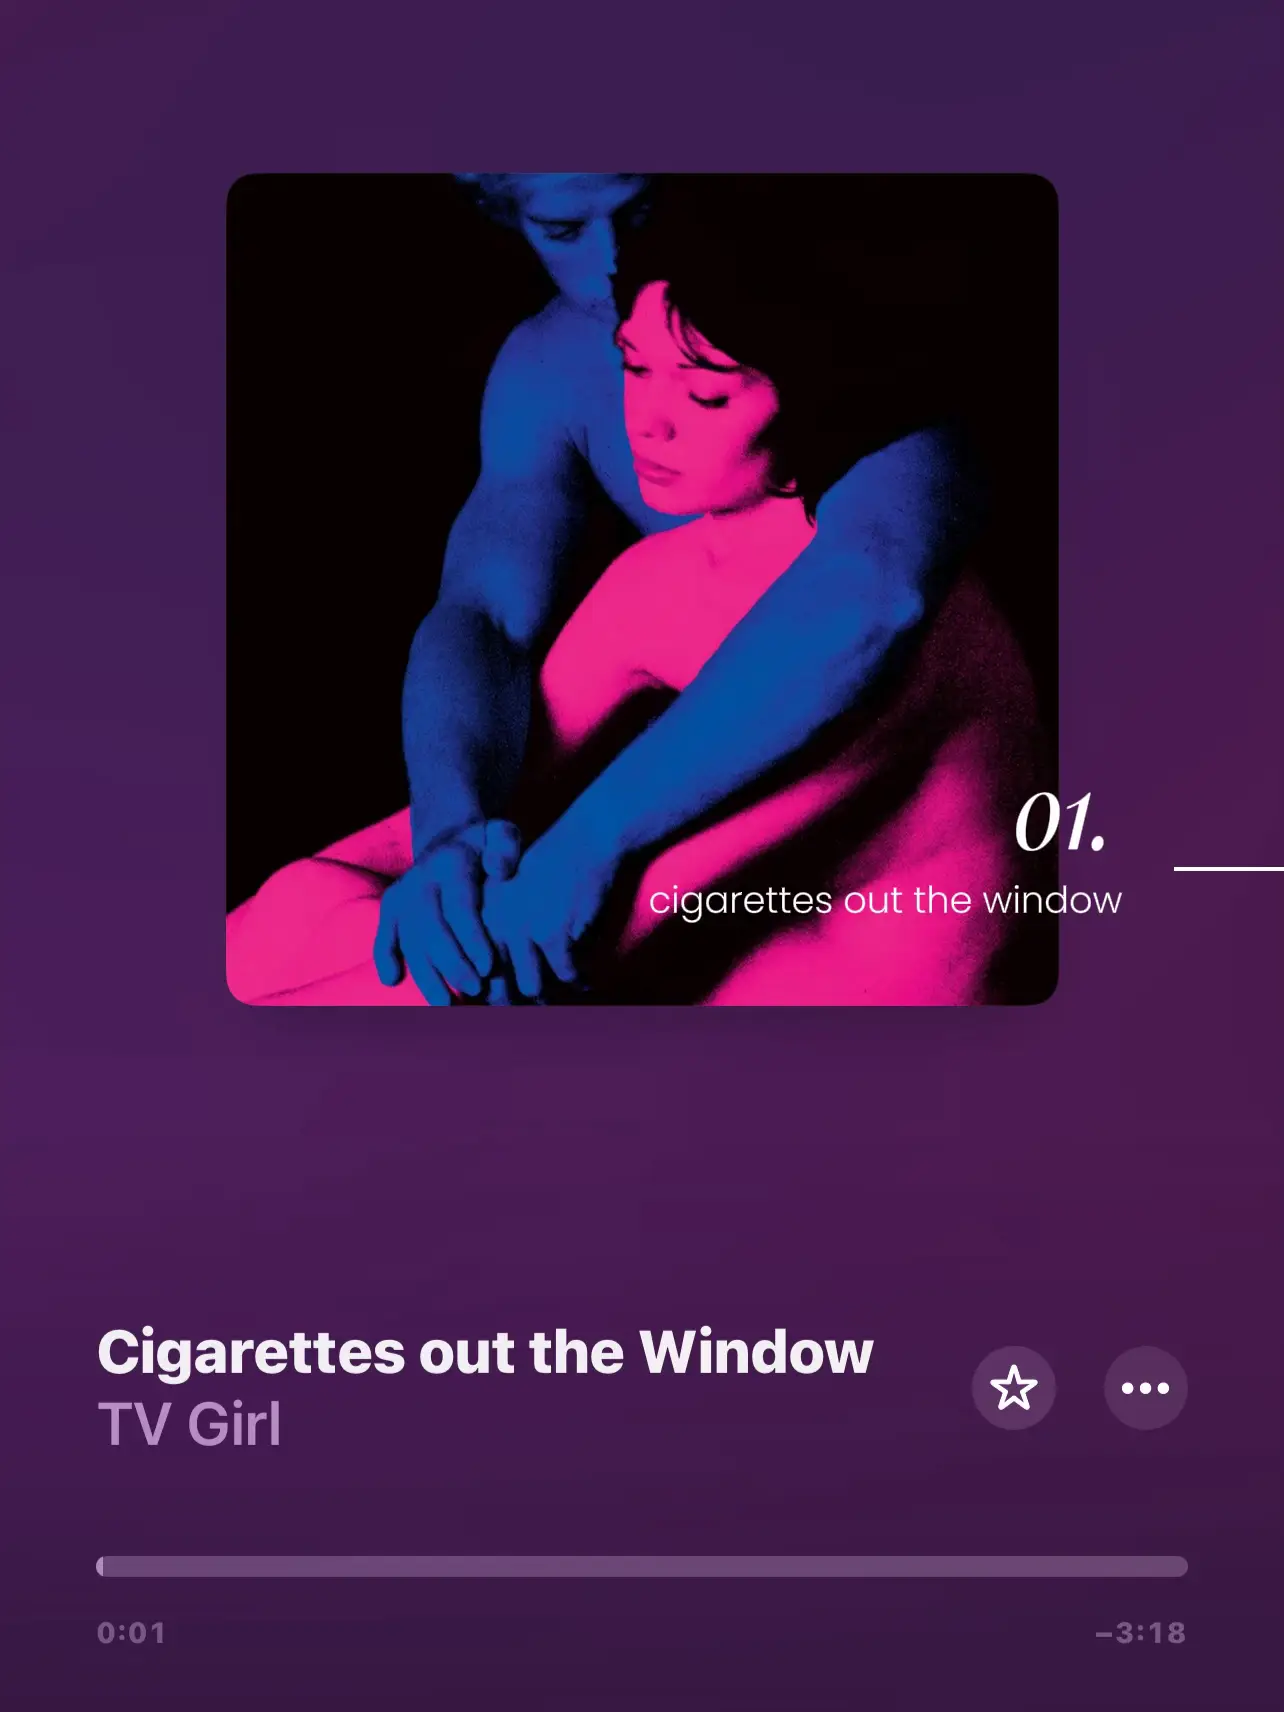  A woman smoking a cigarette.